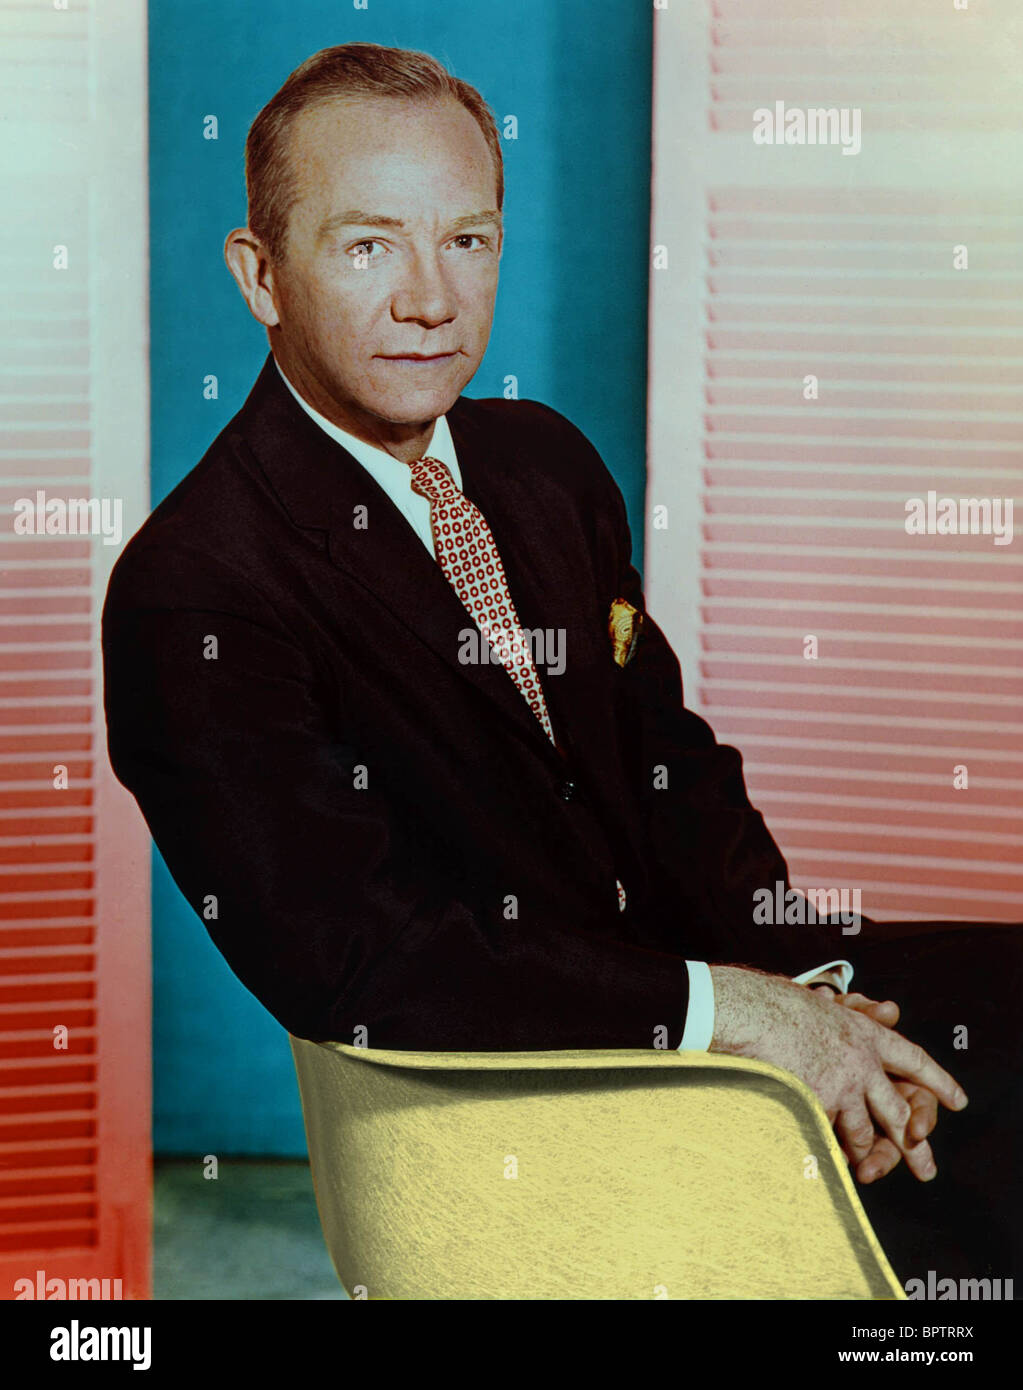 RAY WALSTON ACTOR (1963) Stock Photo